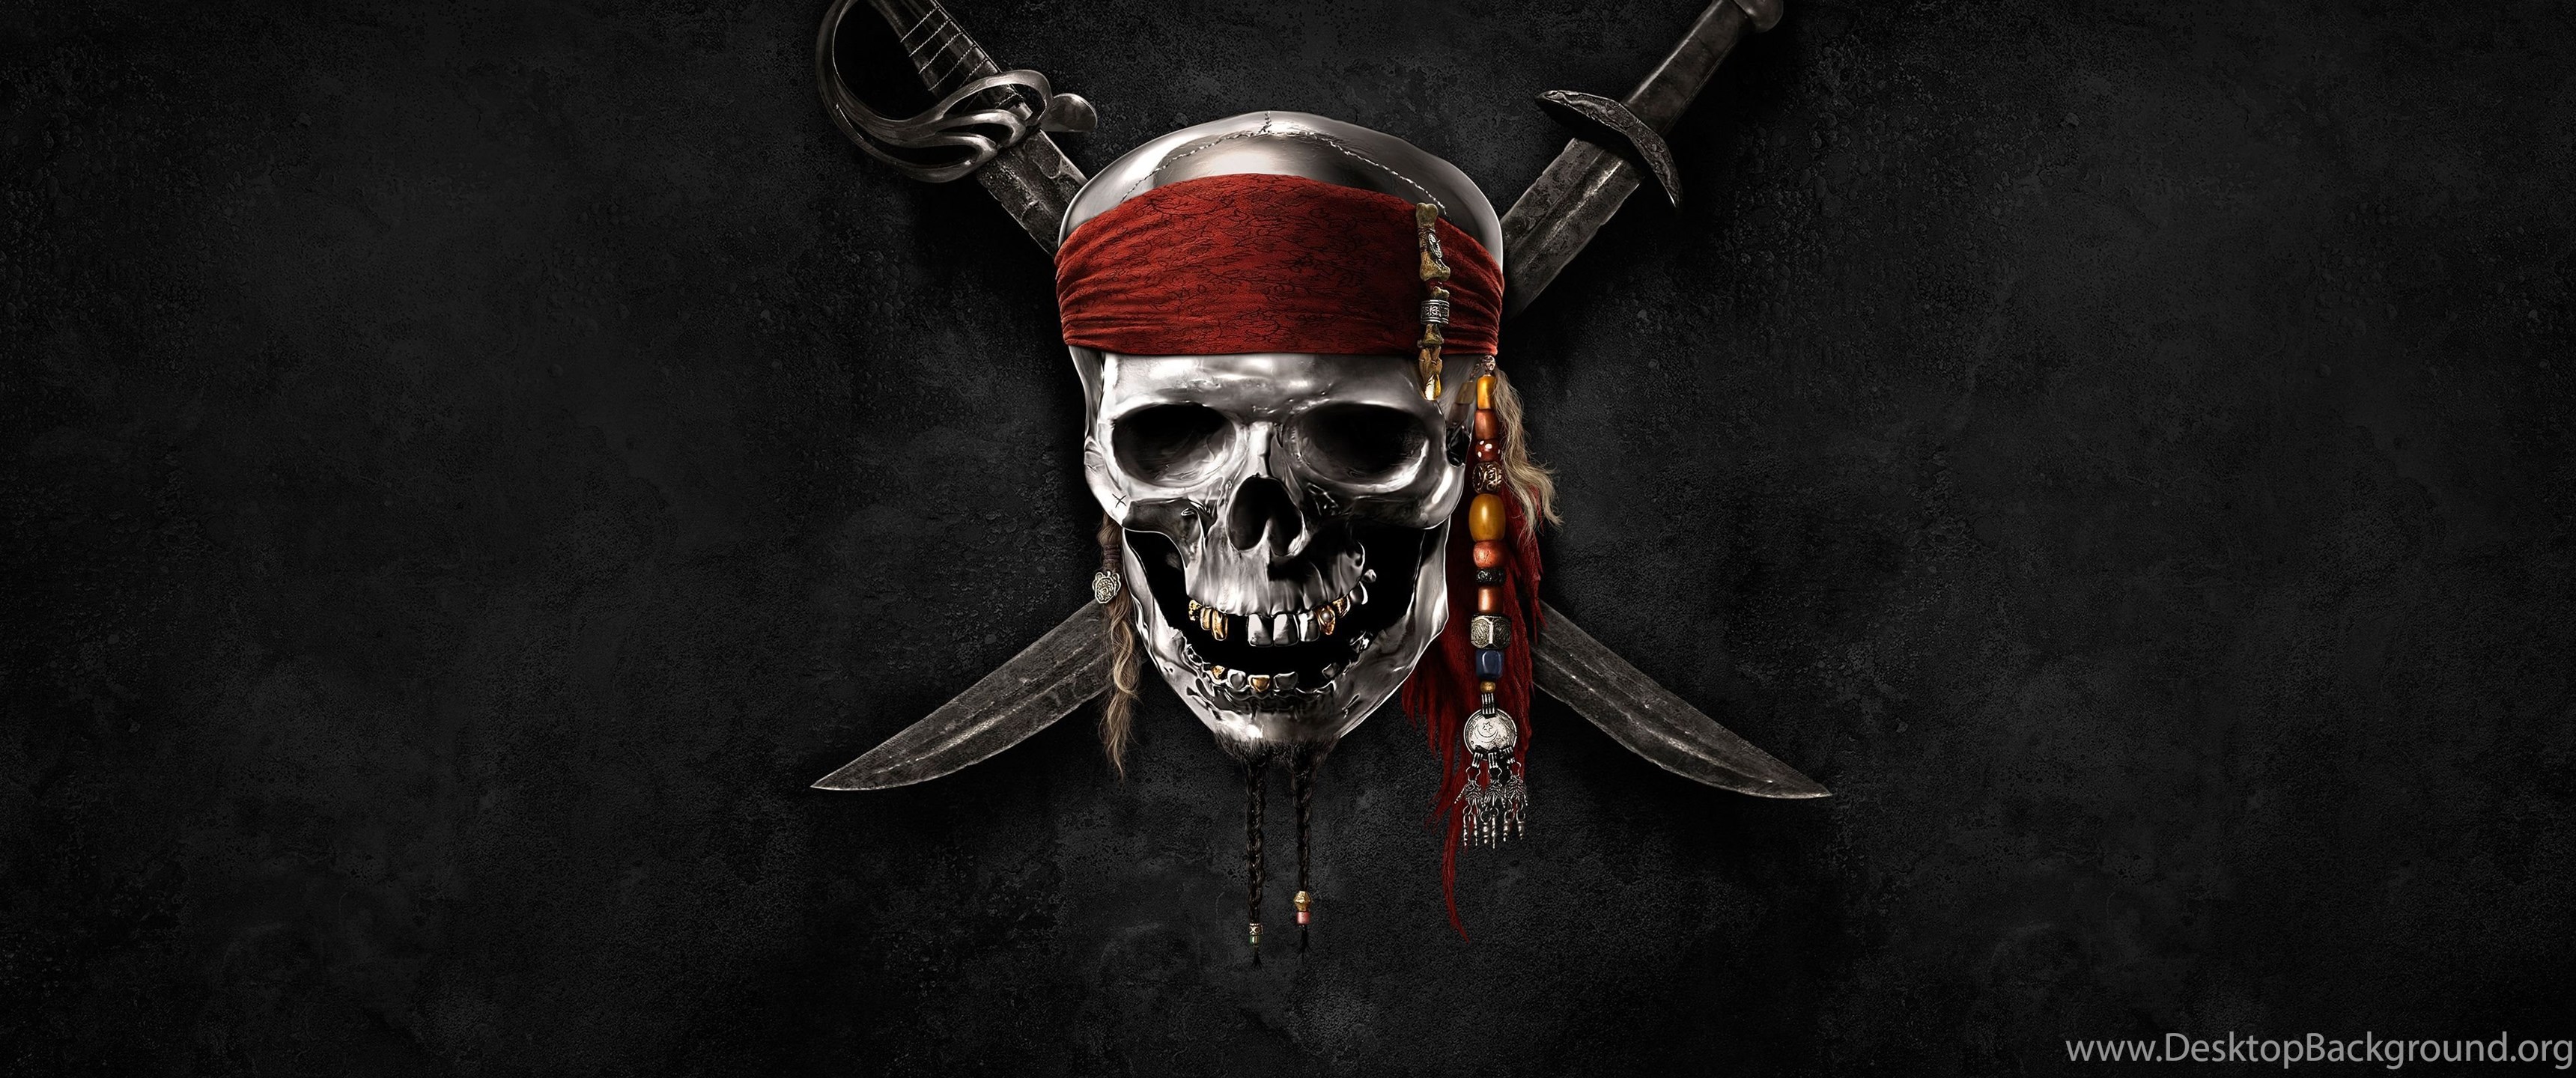 Пиратка стим версия. Пираты обои. Пираты Карибского моря эмблема. Пираты Карибского моря череп. Пиратский череп с саблями.